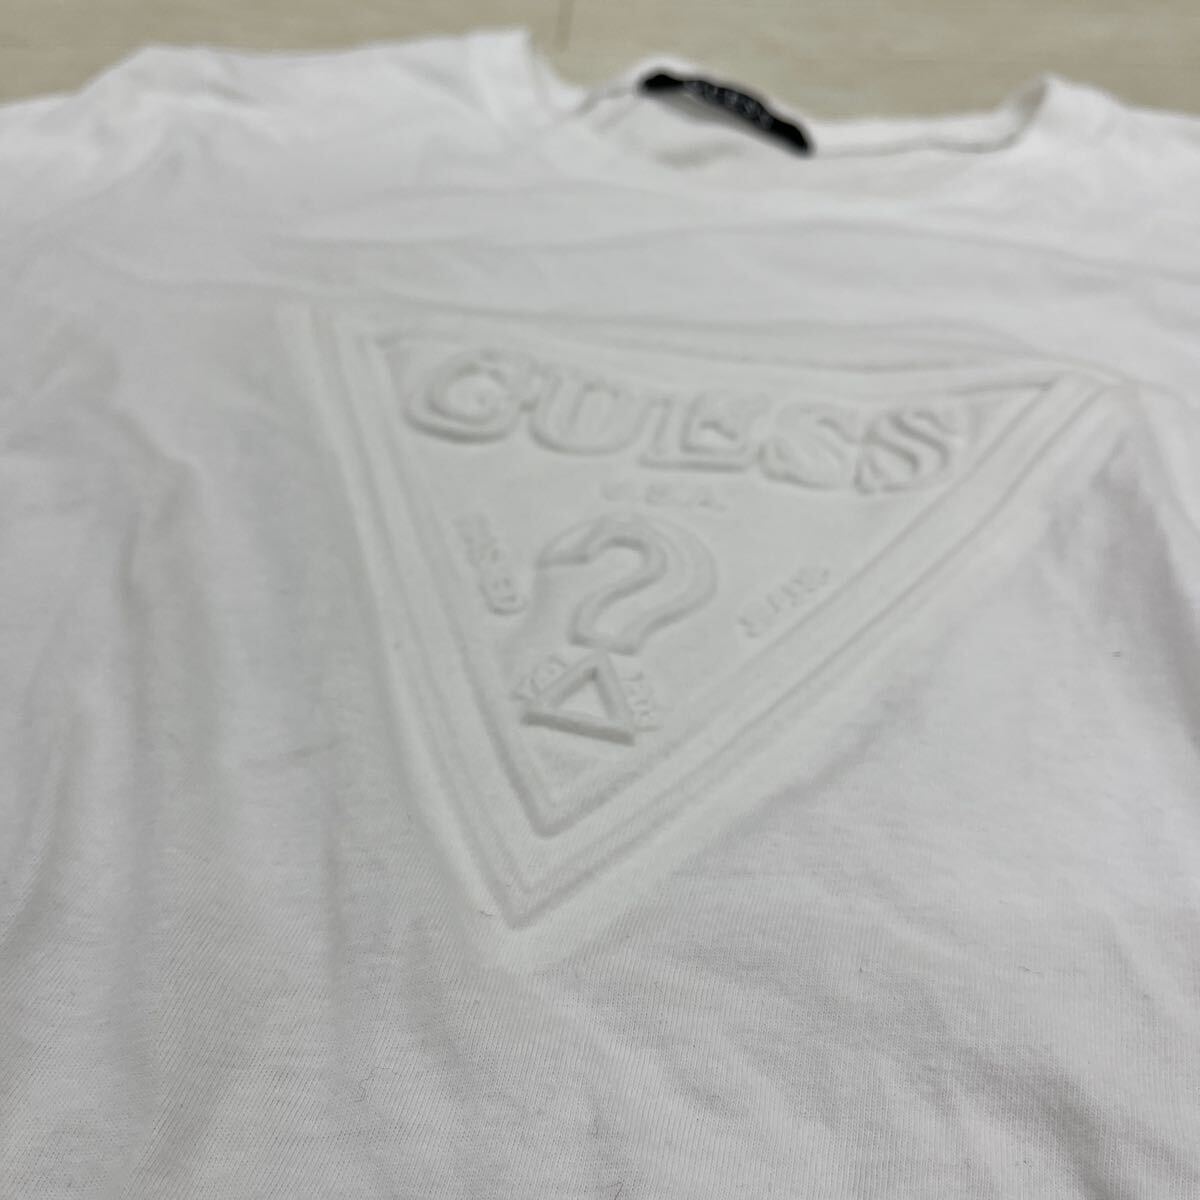 1431* GUESS Guess tops футболка cut and sewn вырез лодочкой короткий рукав 3D Logo хлопок 100 casual белый мужской M